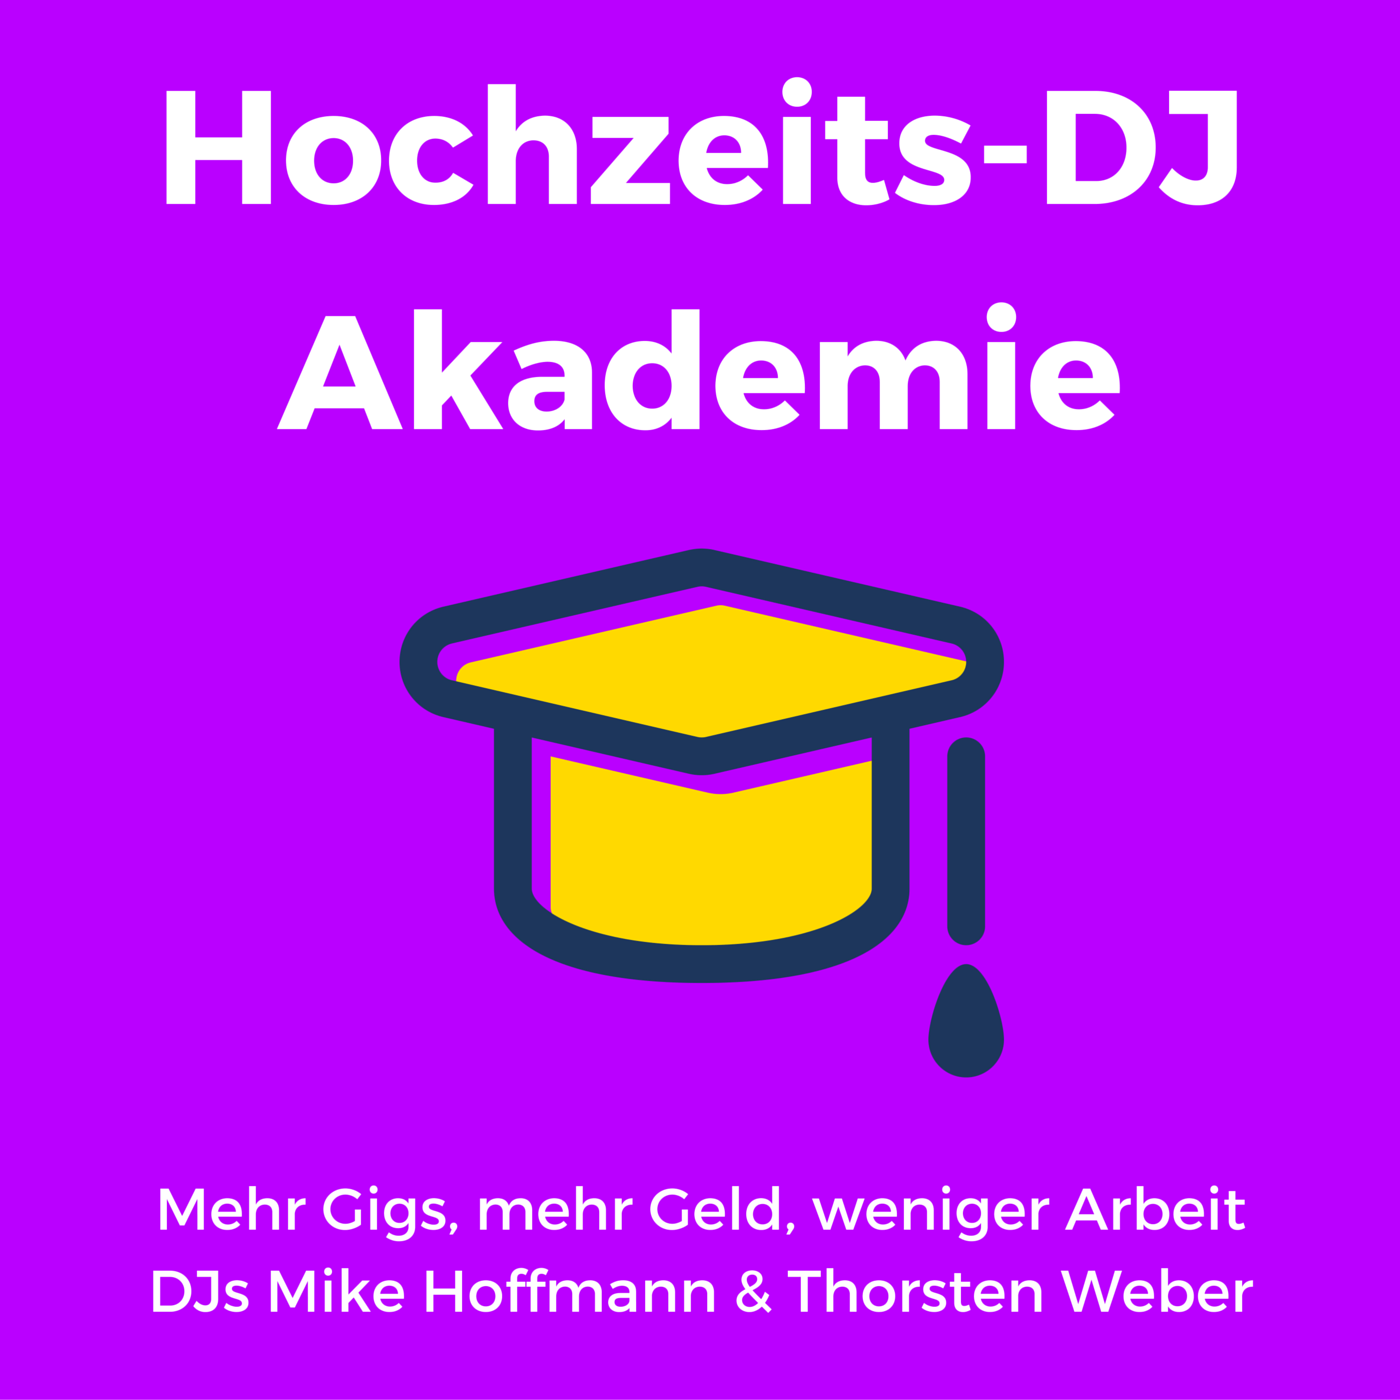 Hochzeits-DJ Akademie | DJ Jobs | Online Marketing | Mehr Gigs bekommen | DJ Website